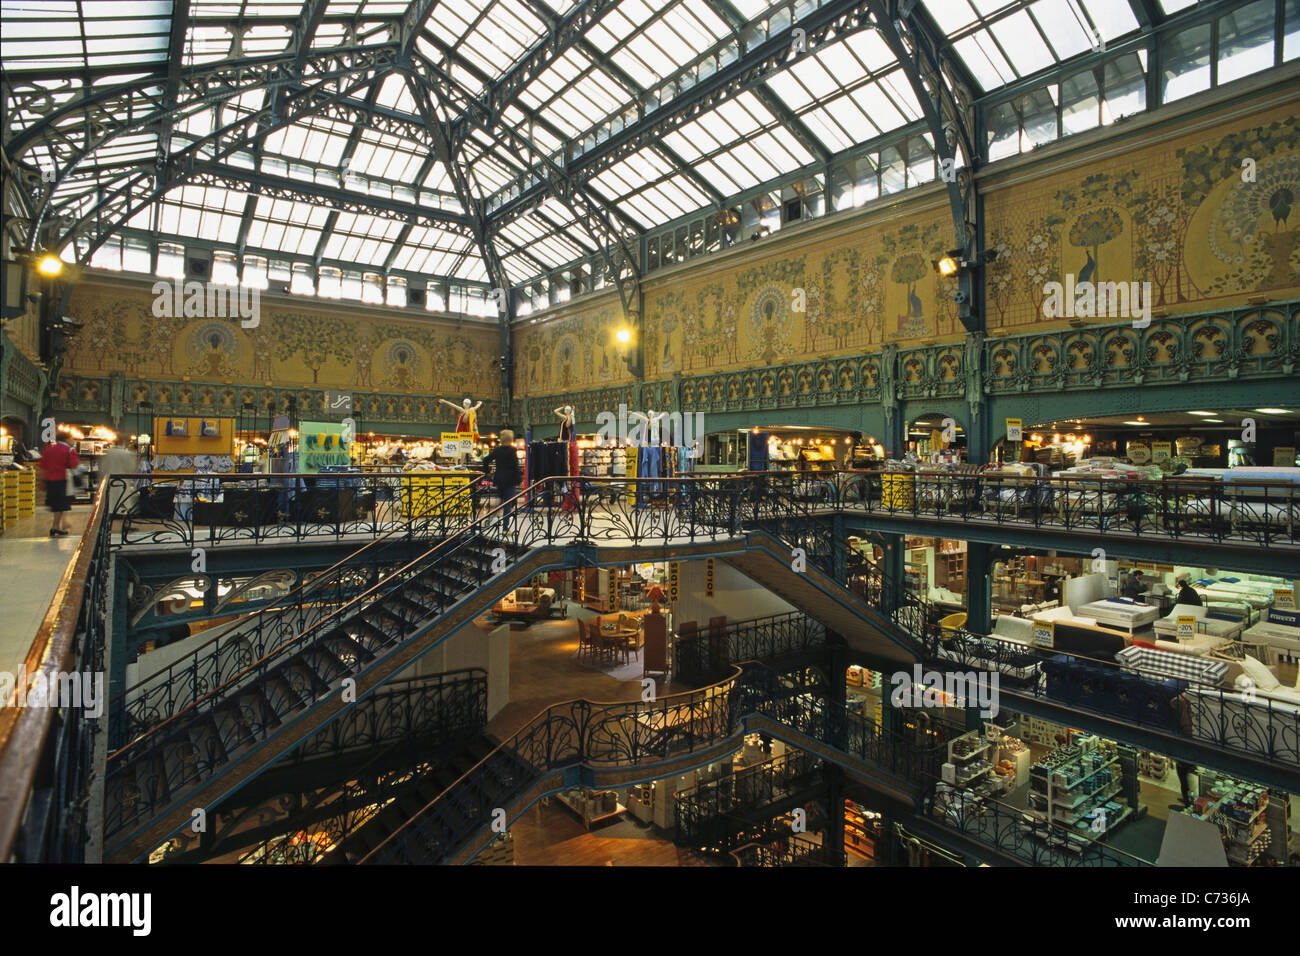 France, Paris, La Samaritaine department store Stock Photo - Alamy